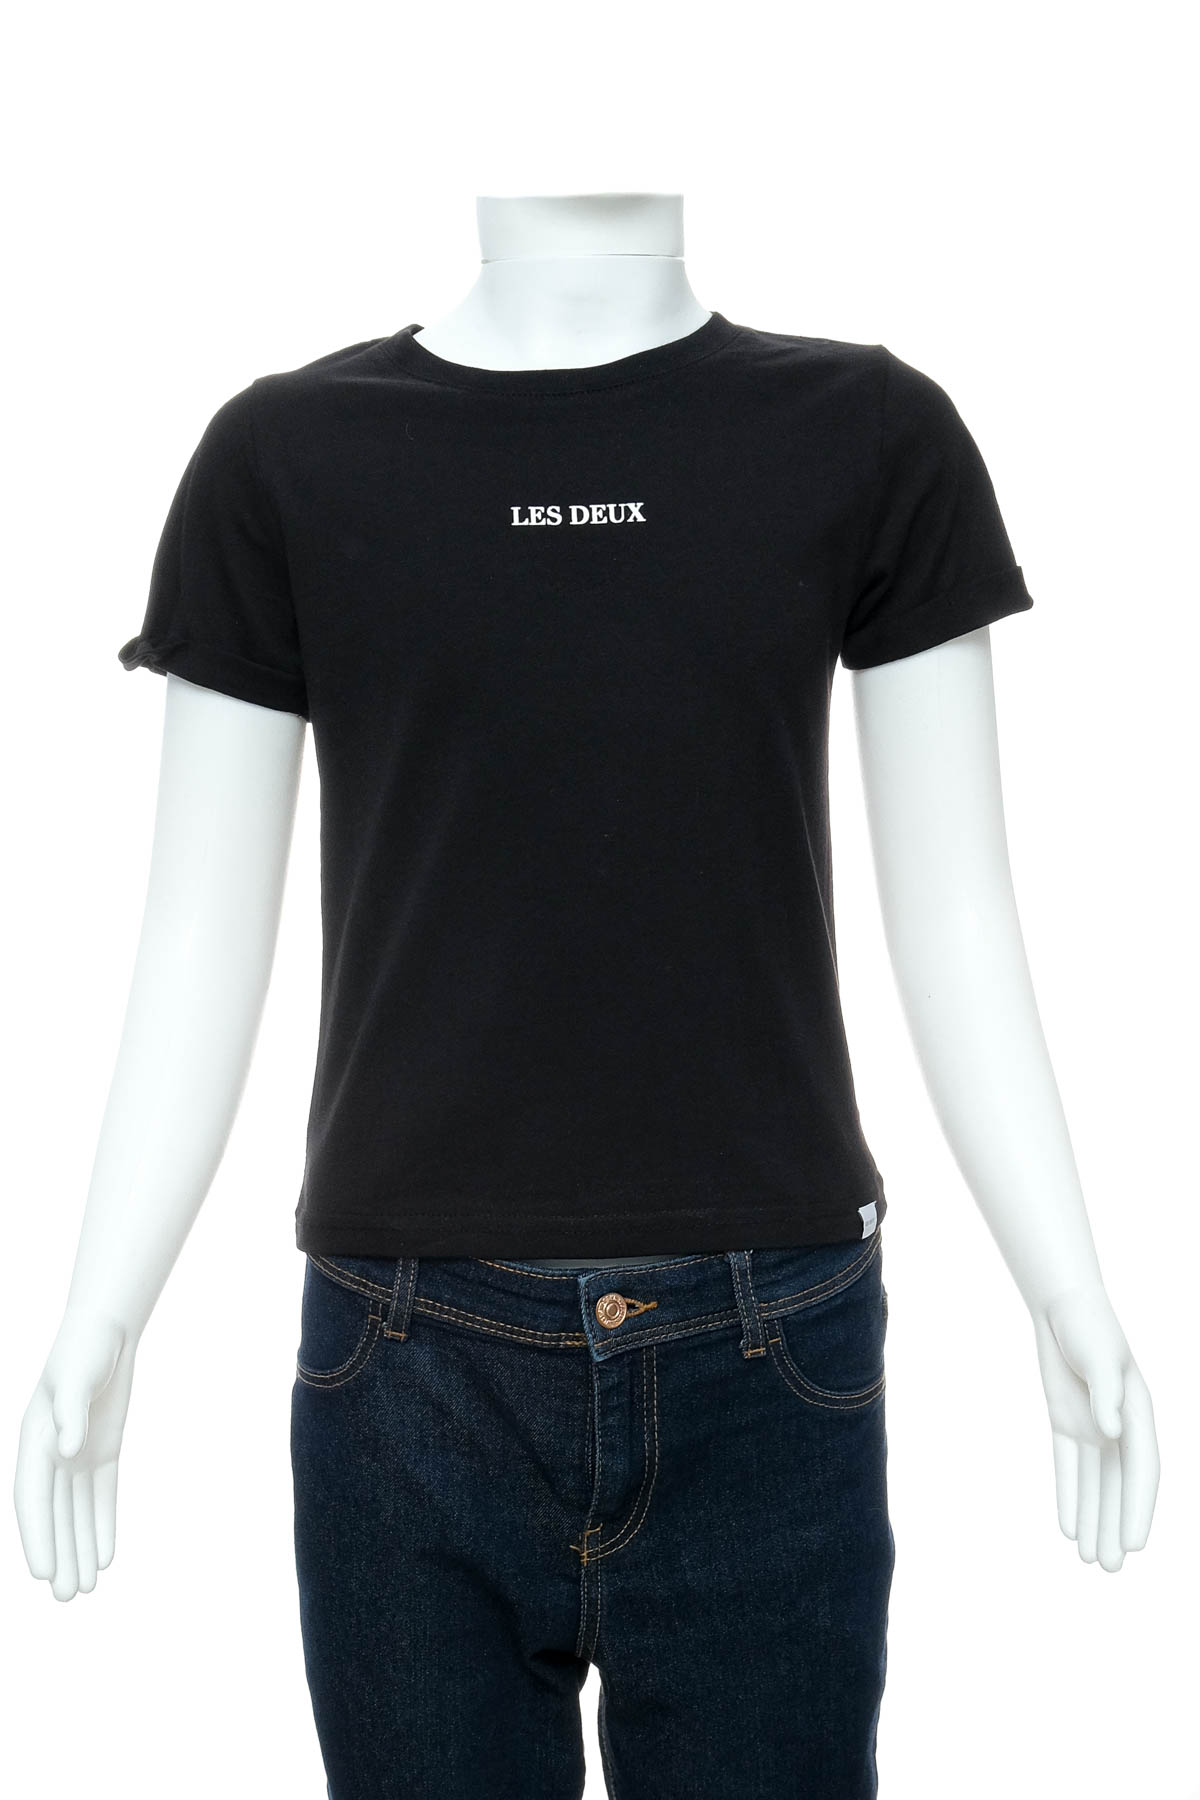 Girls' t-shirt - LES DEUX - 0